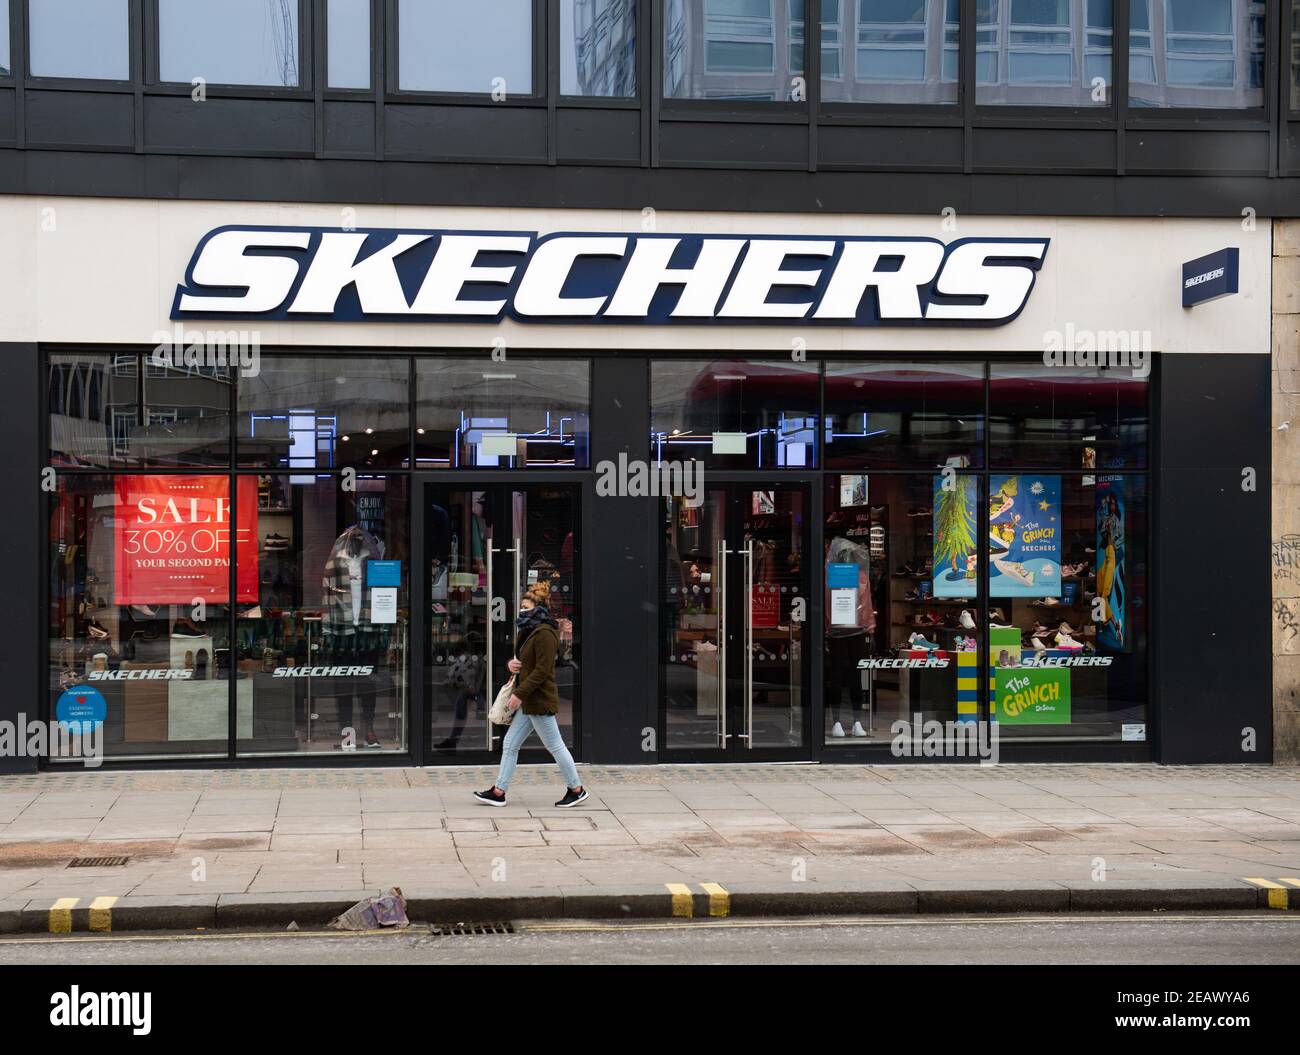 Bliv overrasket Billy Arkæologiske Skechers store, Oxford Street, London Stock Photo - Alamy